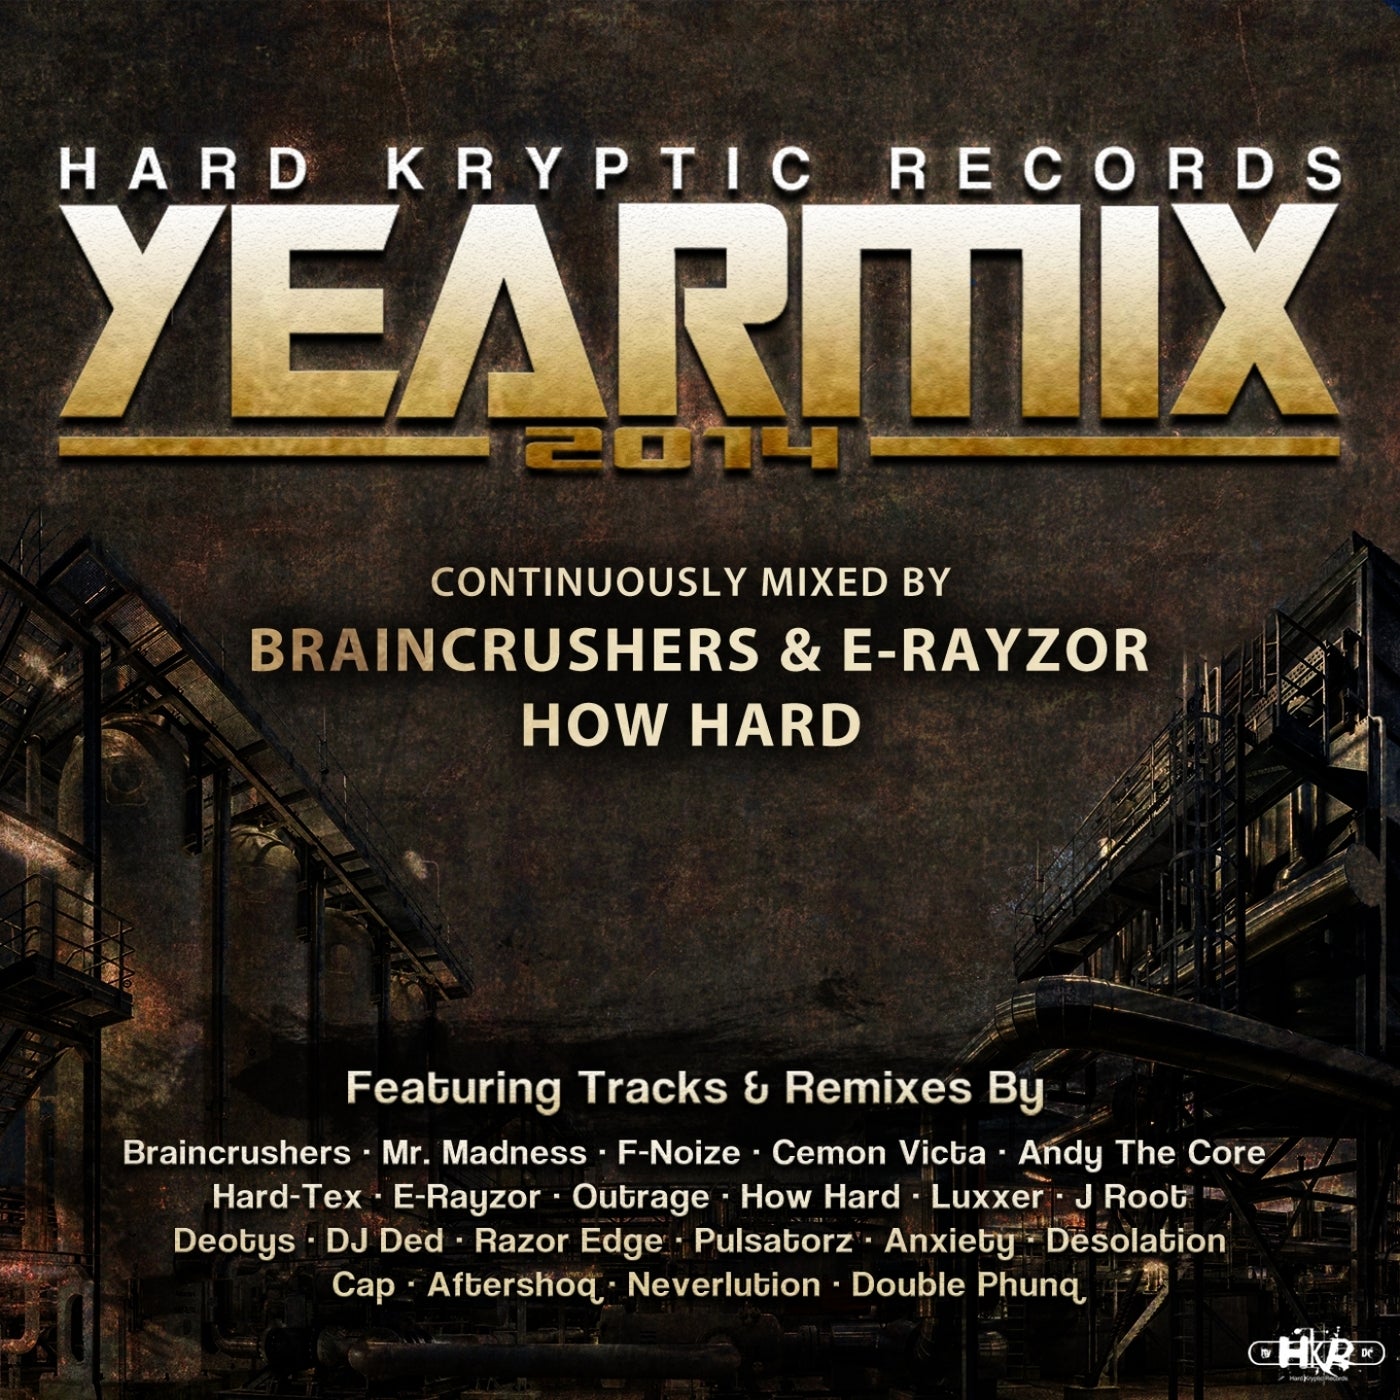 Hard Kryptic Records Yearmix 2014